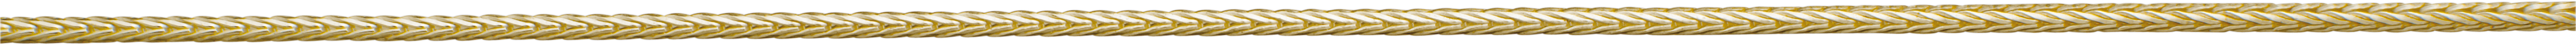 vossestaart ketting goud 750/-gg Ø 1,15mm